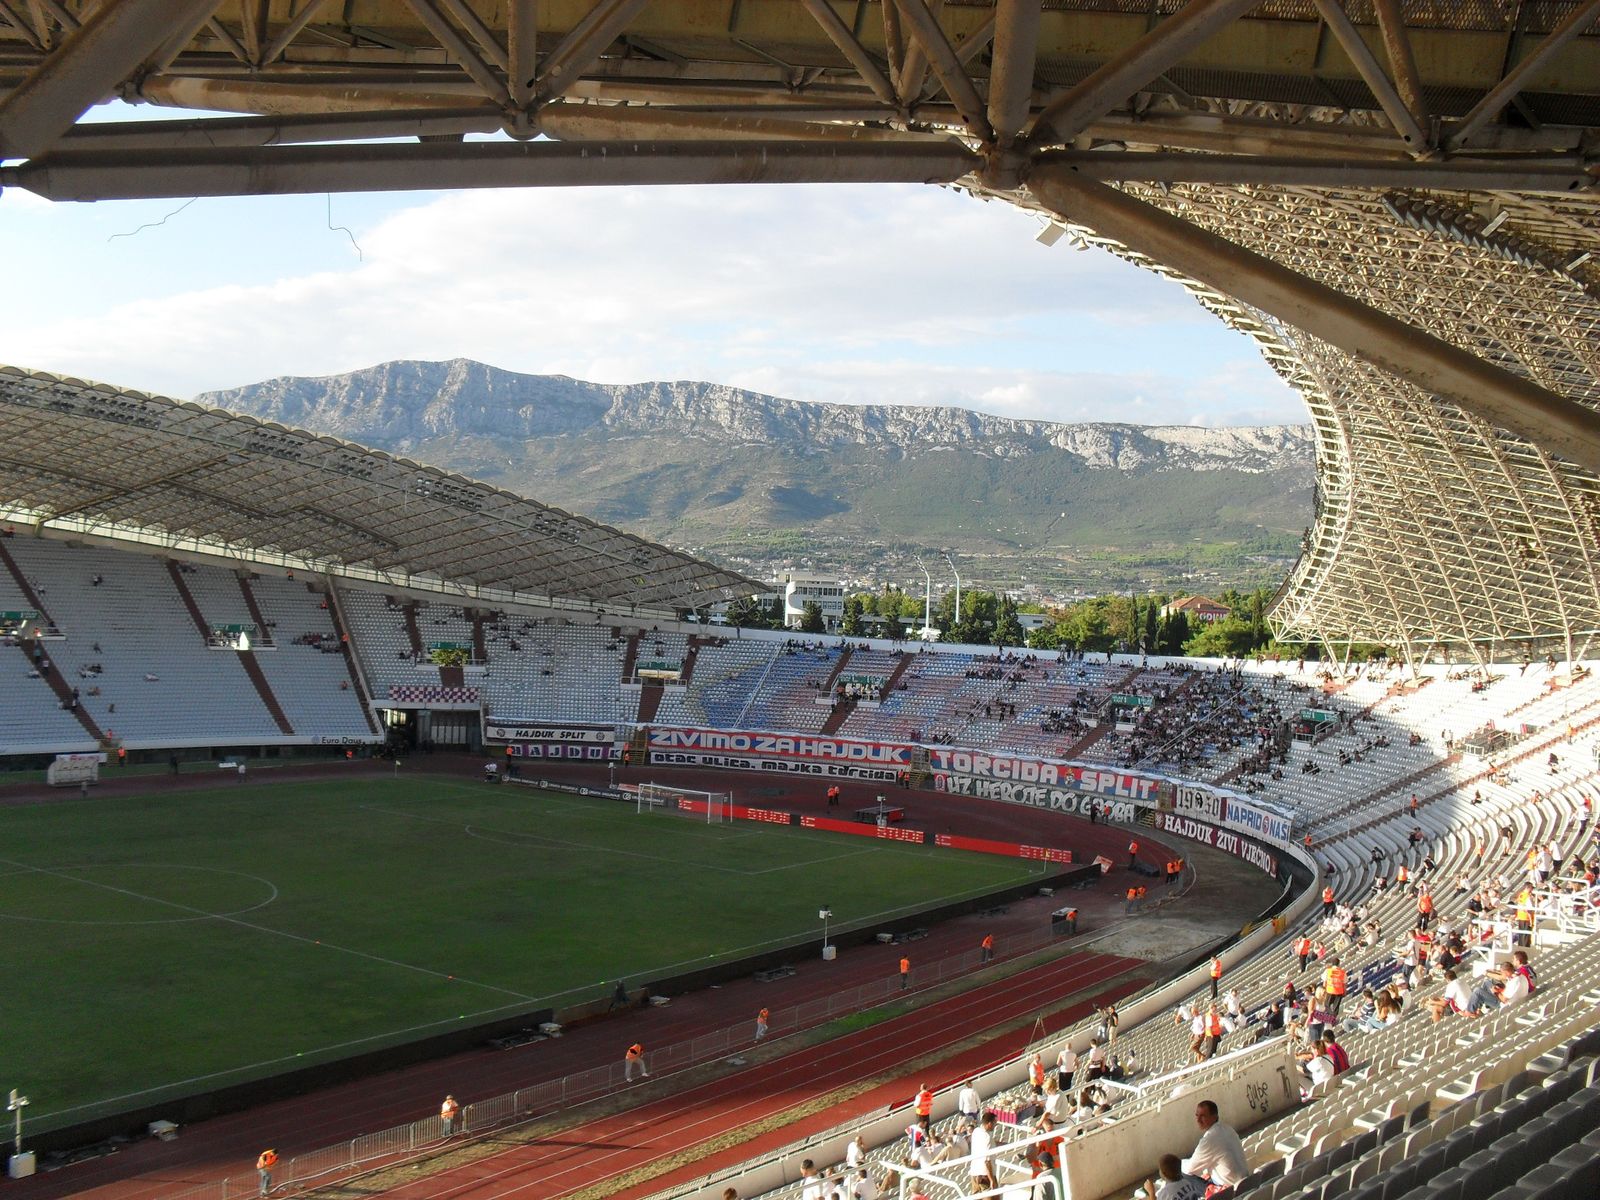 Book Tickets & Tours - Poljud Stadium (Stadion Poljud), Split - Viator